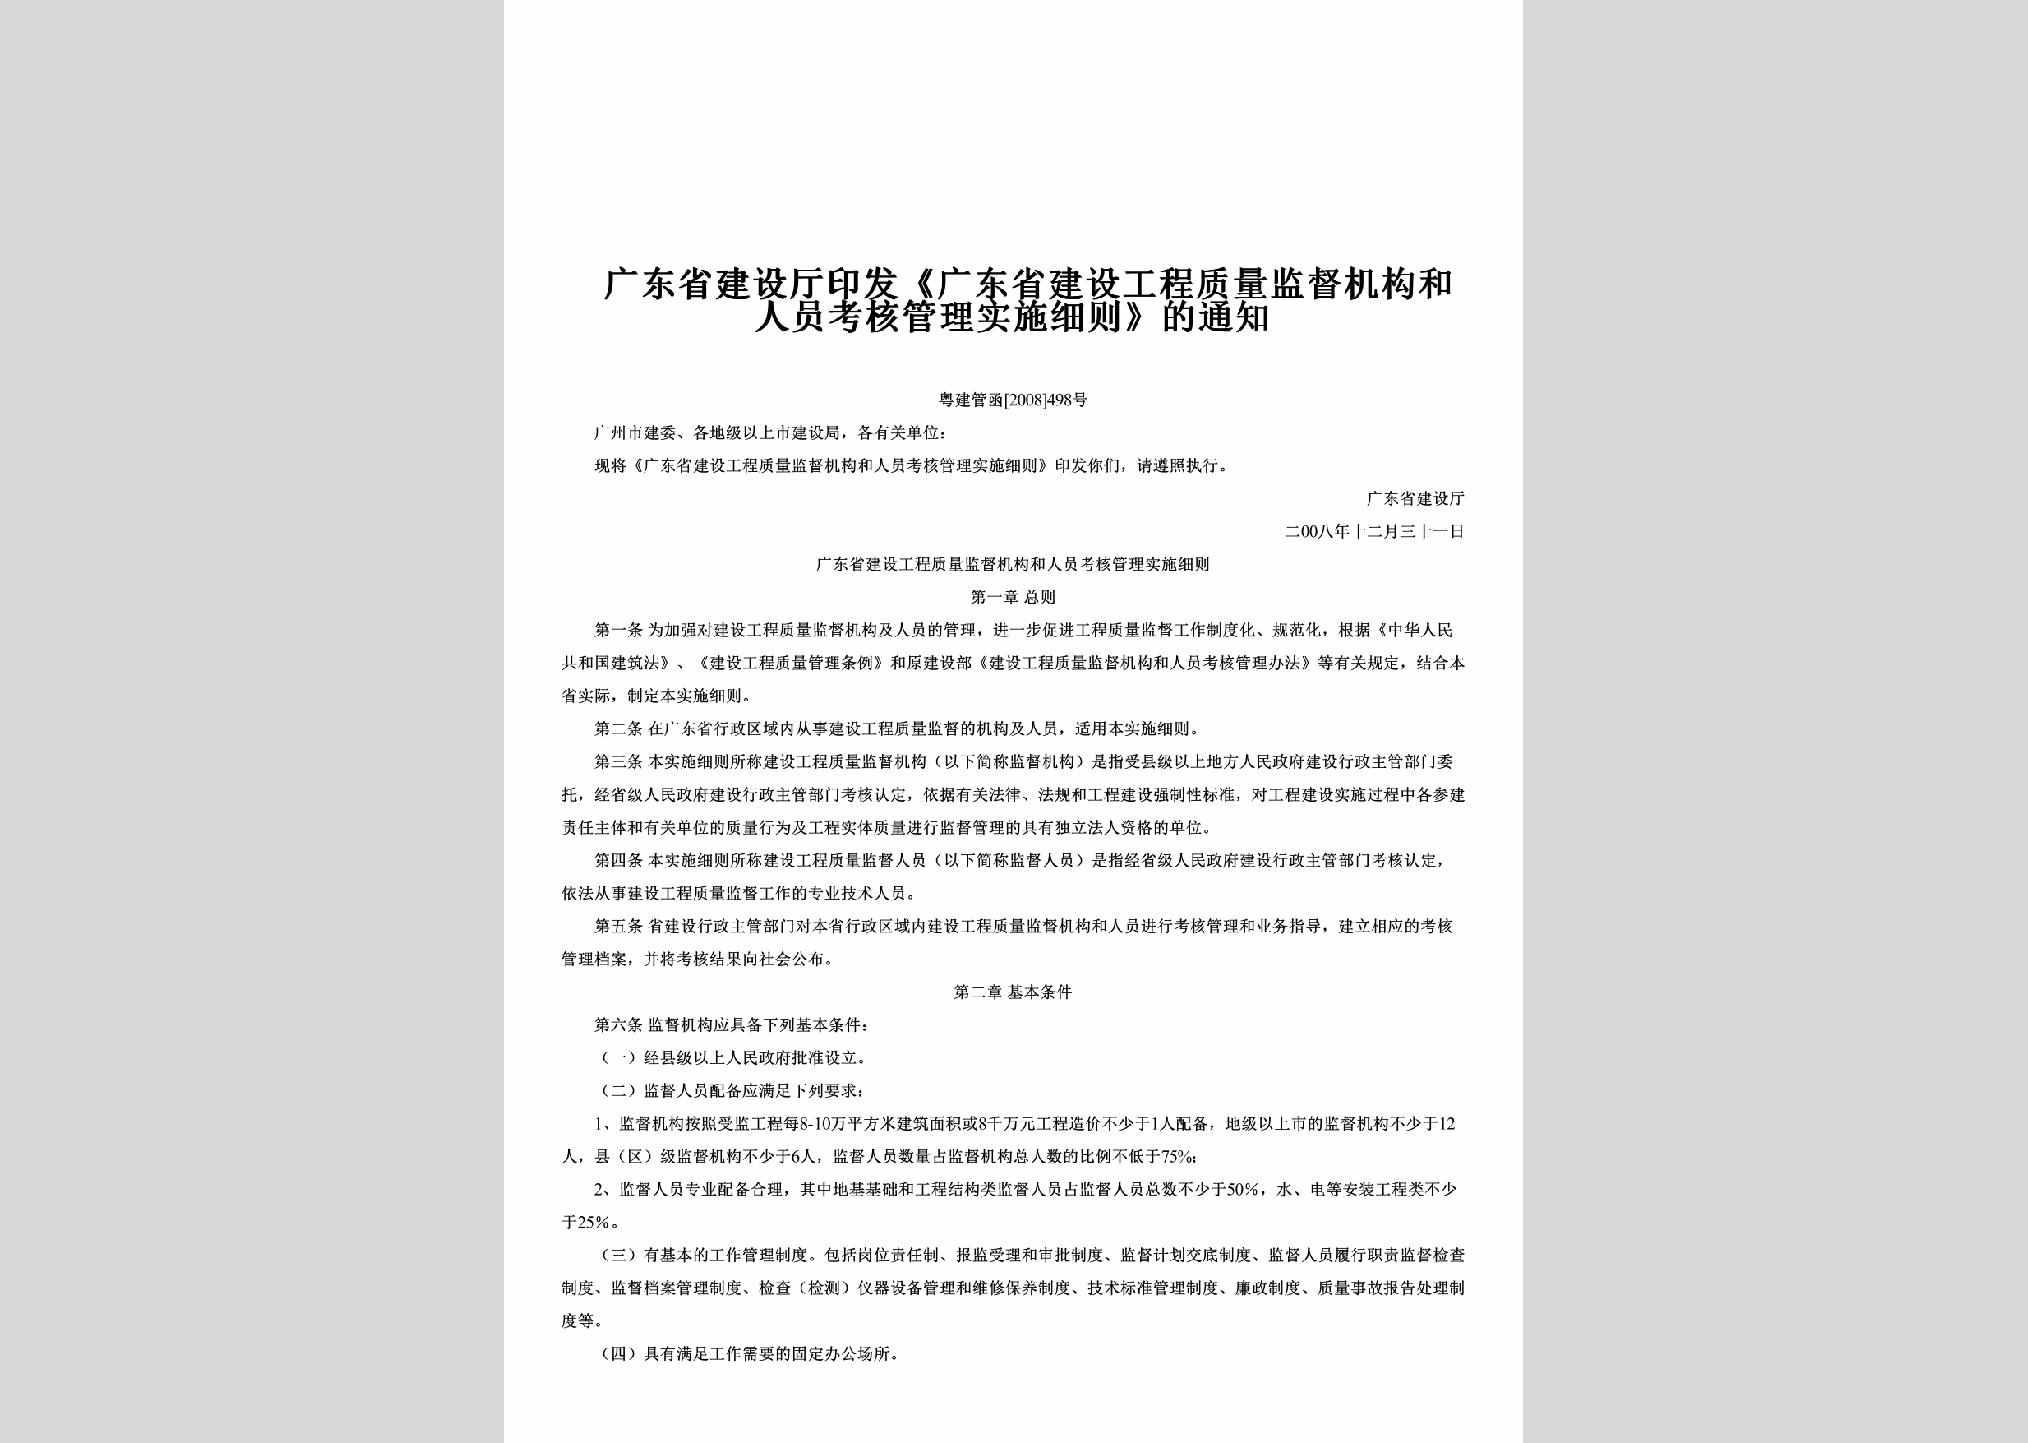 粤建管函[2008]498号：印发《广东省建设工程质量监督机构和人员考核管理实施细则》的通知